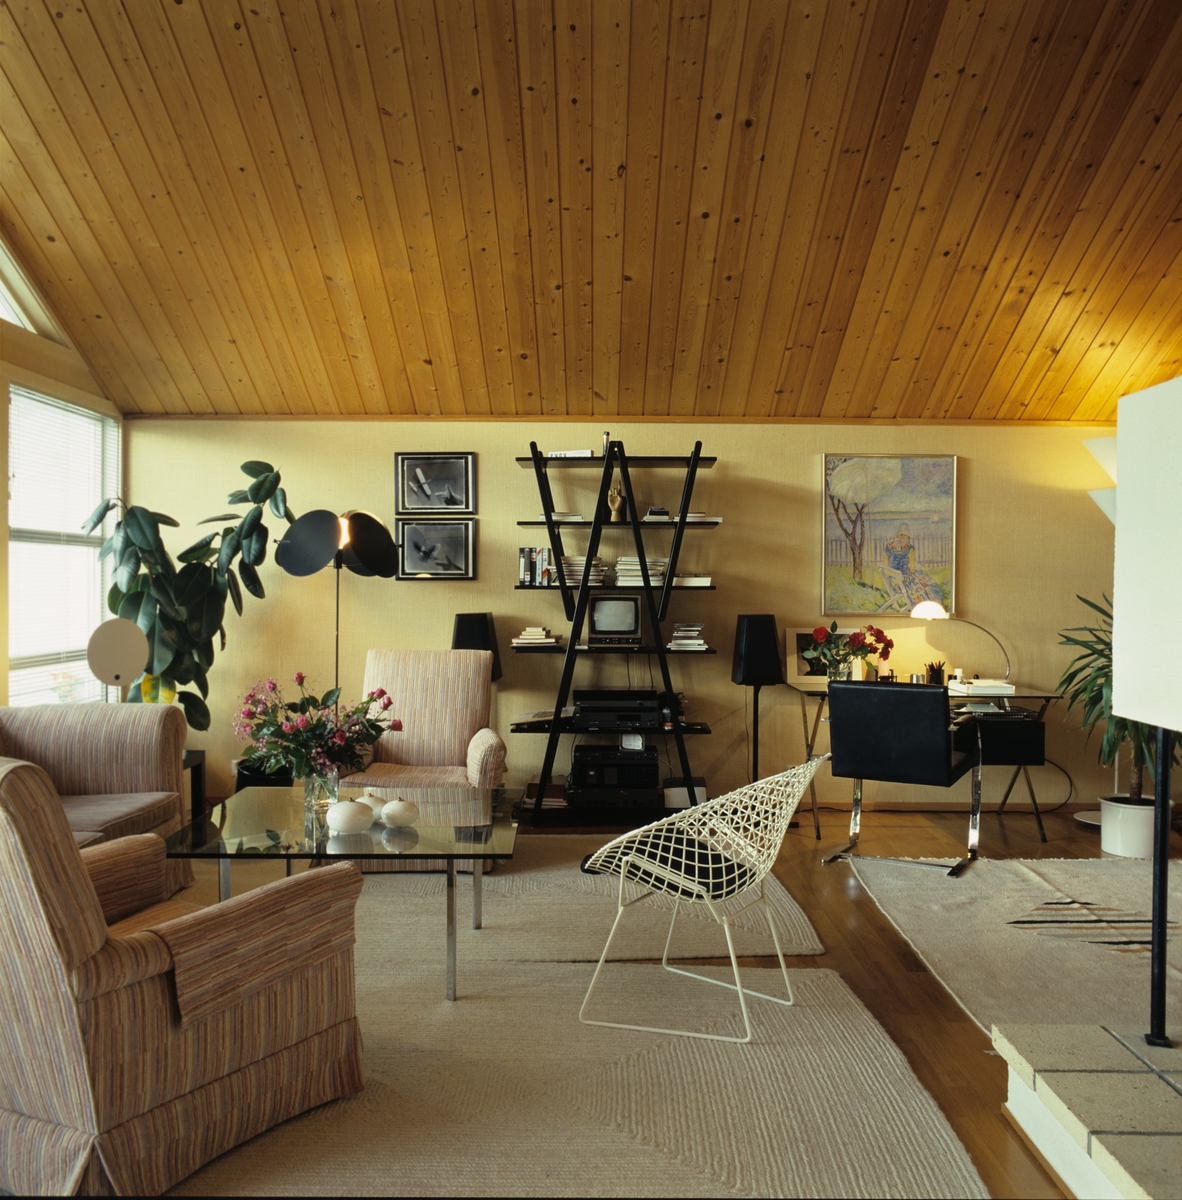 Stue møblert med en blanding av nytt og gammelt, i kjedet hus bygget i 1982 på Slemdal i Oslo. Arkitekt Christian Malon. Illustrasjonsbilde fra Bonytt 1986.